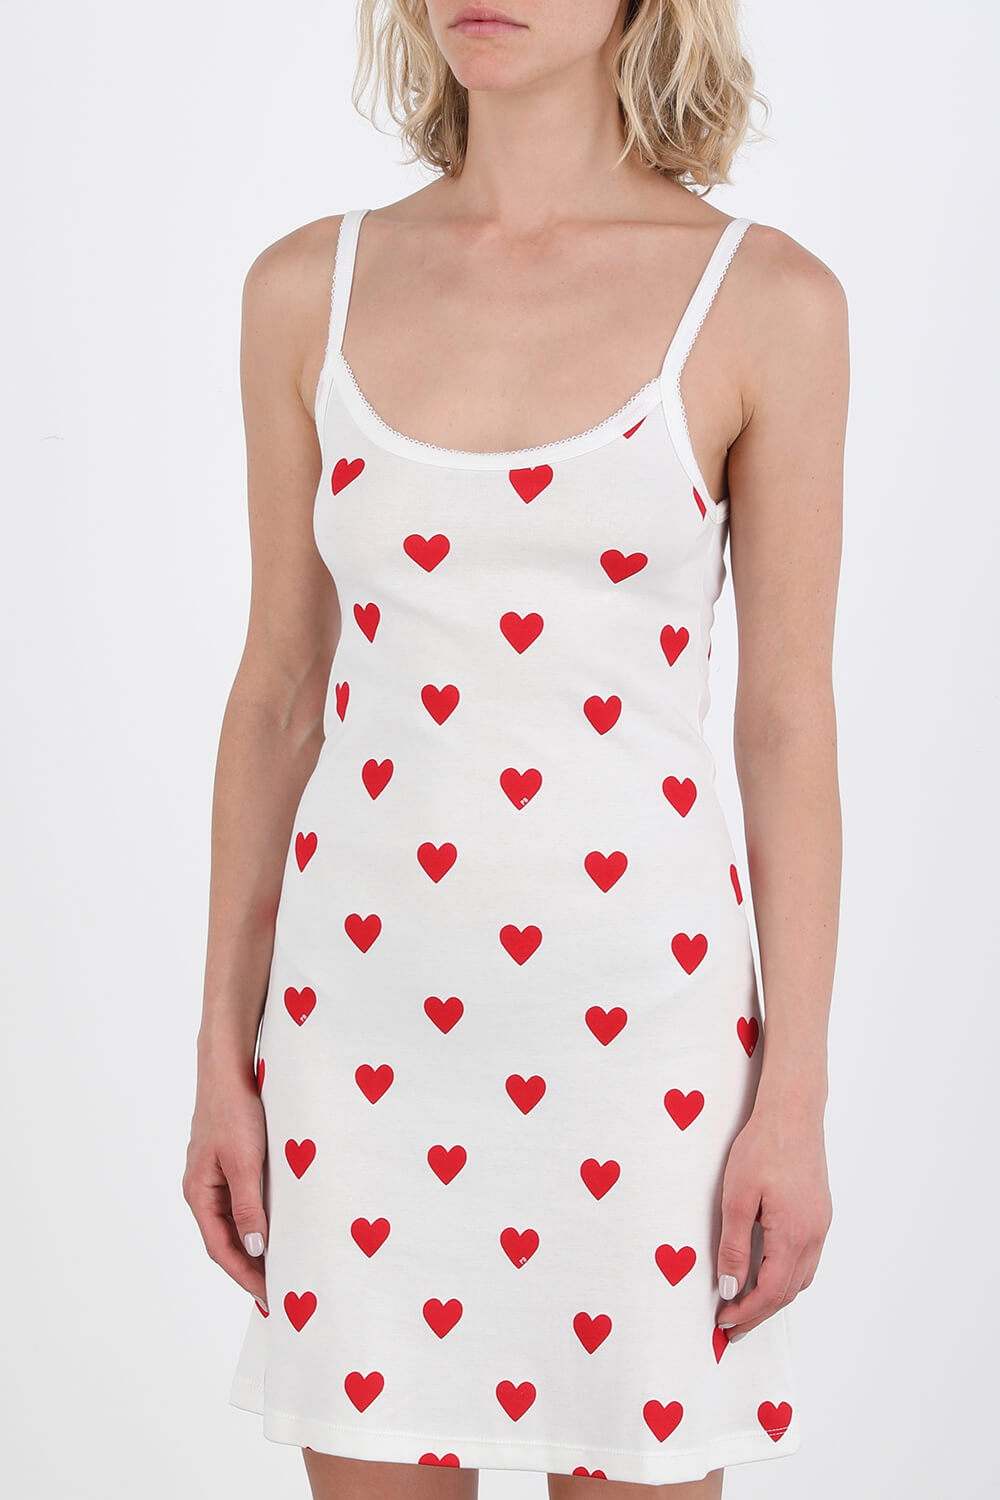 שמלה אייקוניק לבבות בלבן ואדום PETIT BATEAU